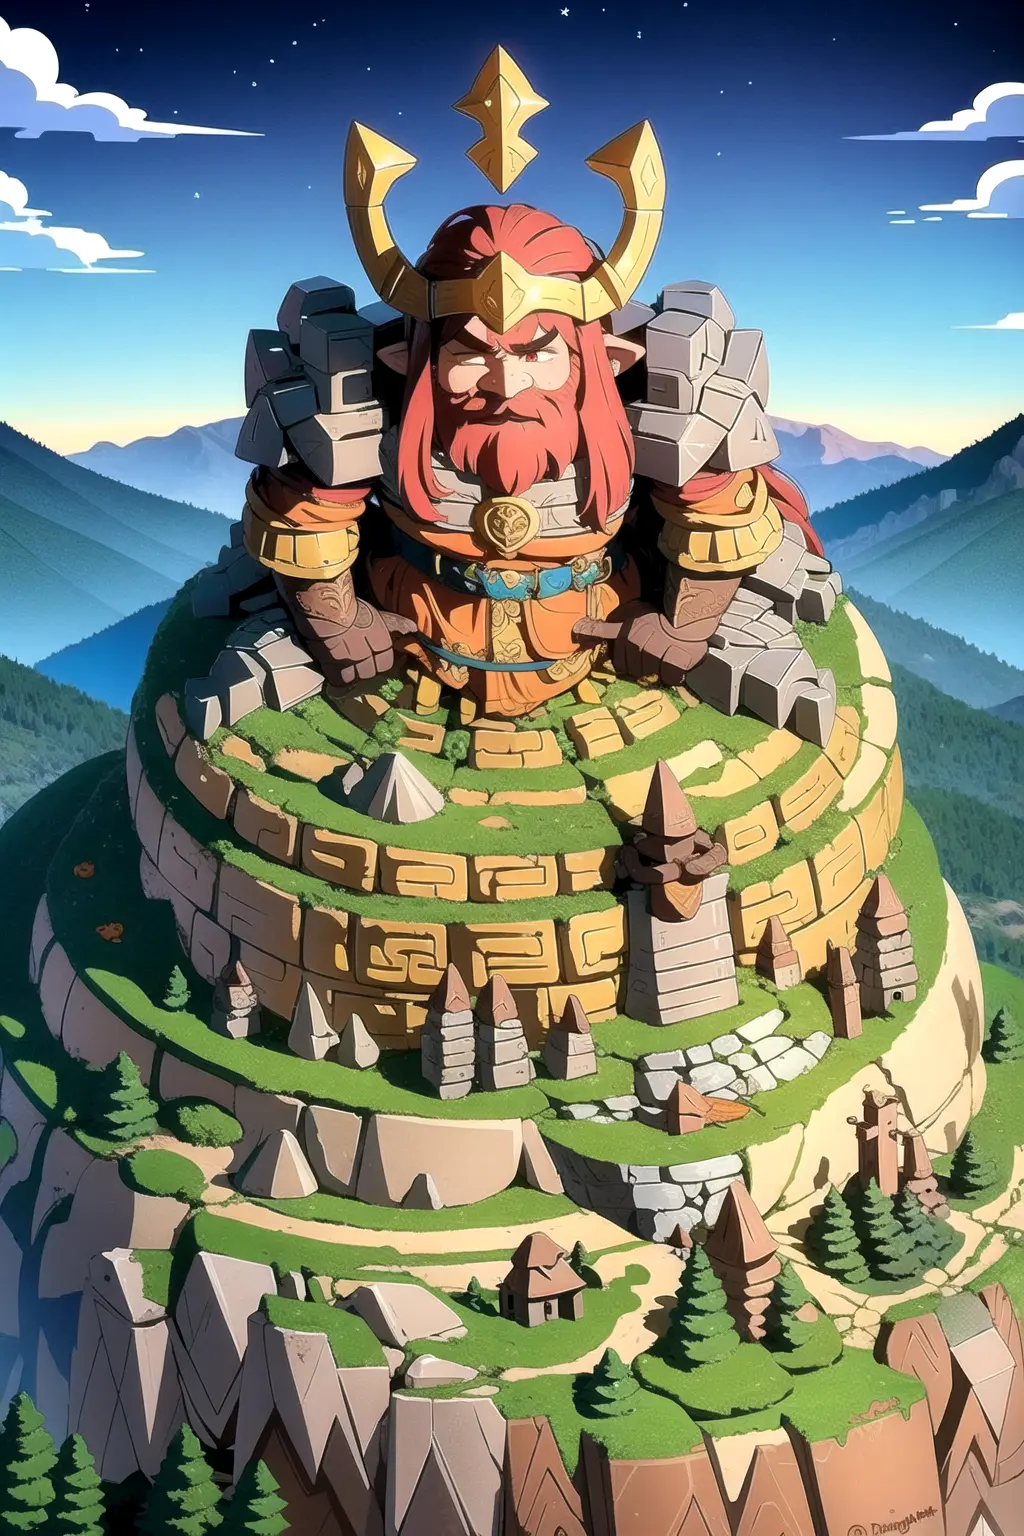 guerreiro, Uma extensa cidade de anões, esculpido profundamente no coração de uma montanha, Druida protegendo a floresta de invasores, Ruínas afundadas